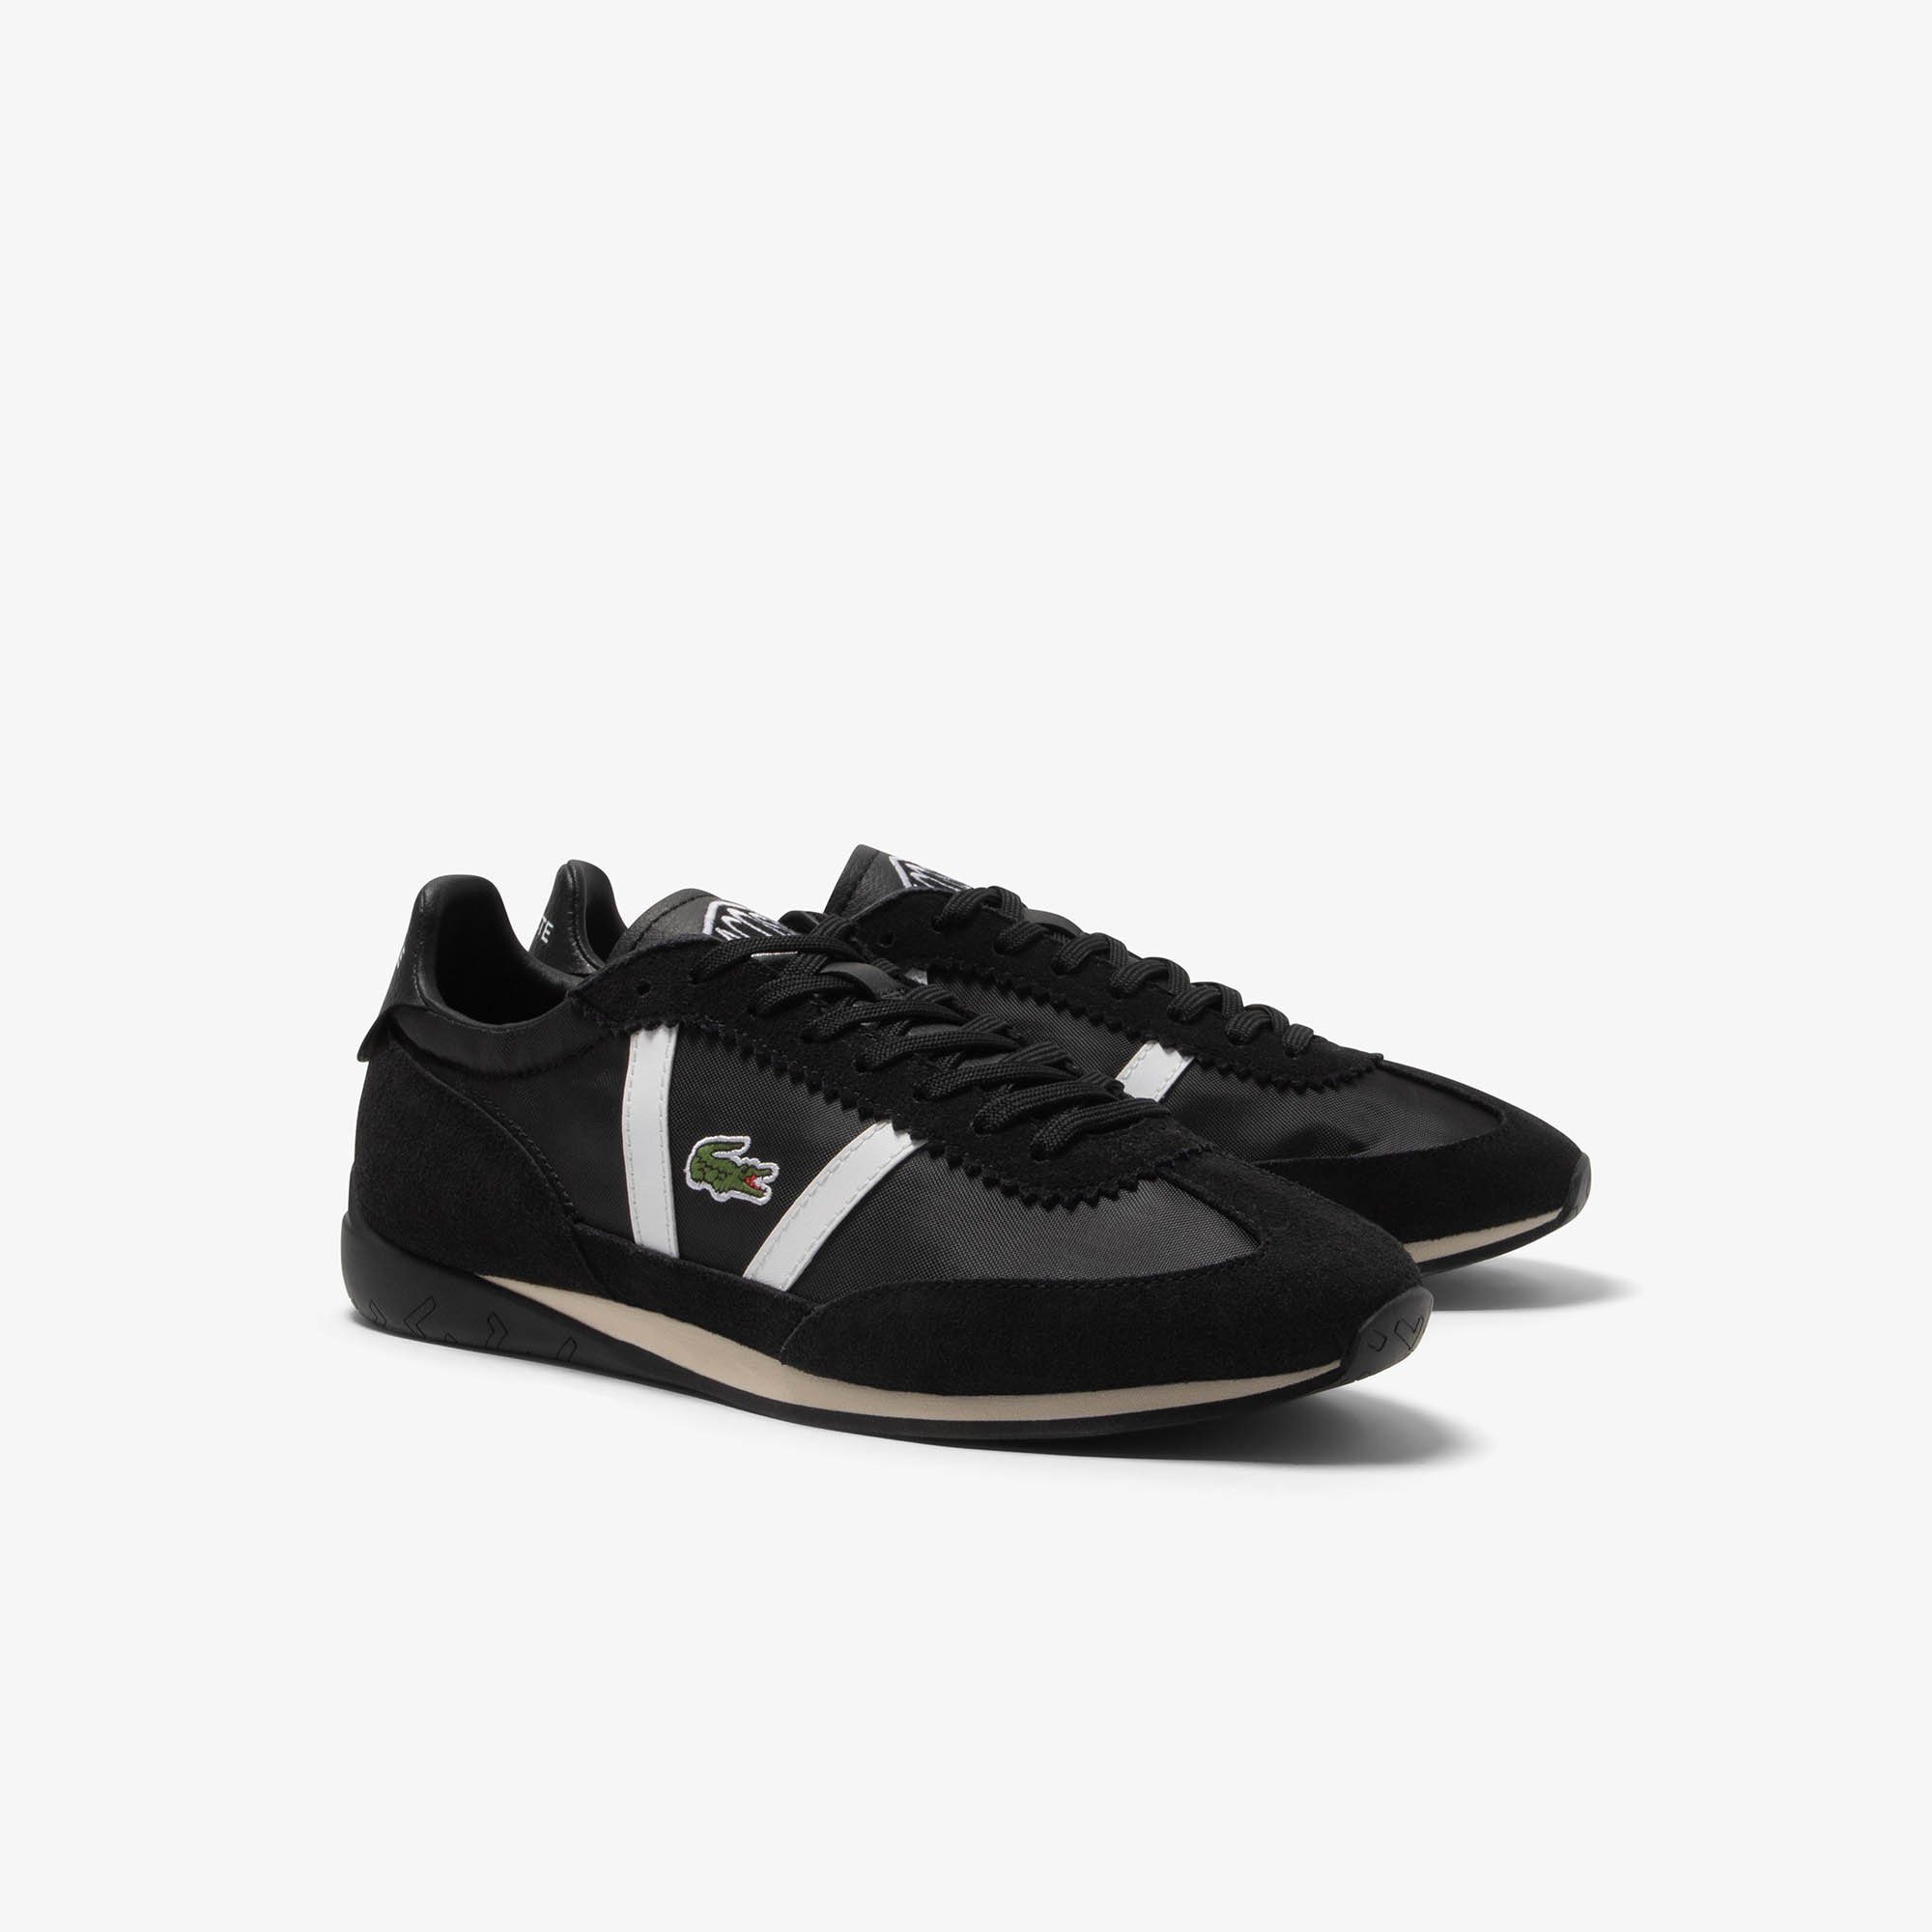 Lacoste LOW PRO VTG CMA Sneaker 223 1